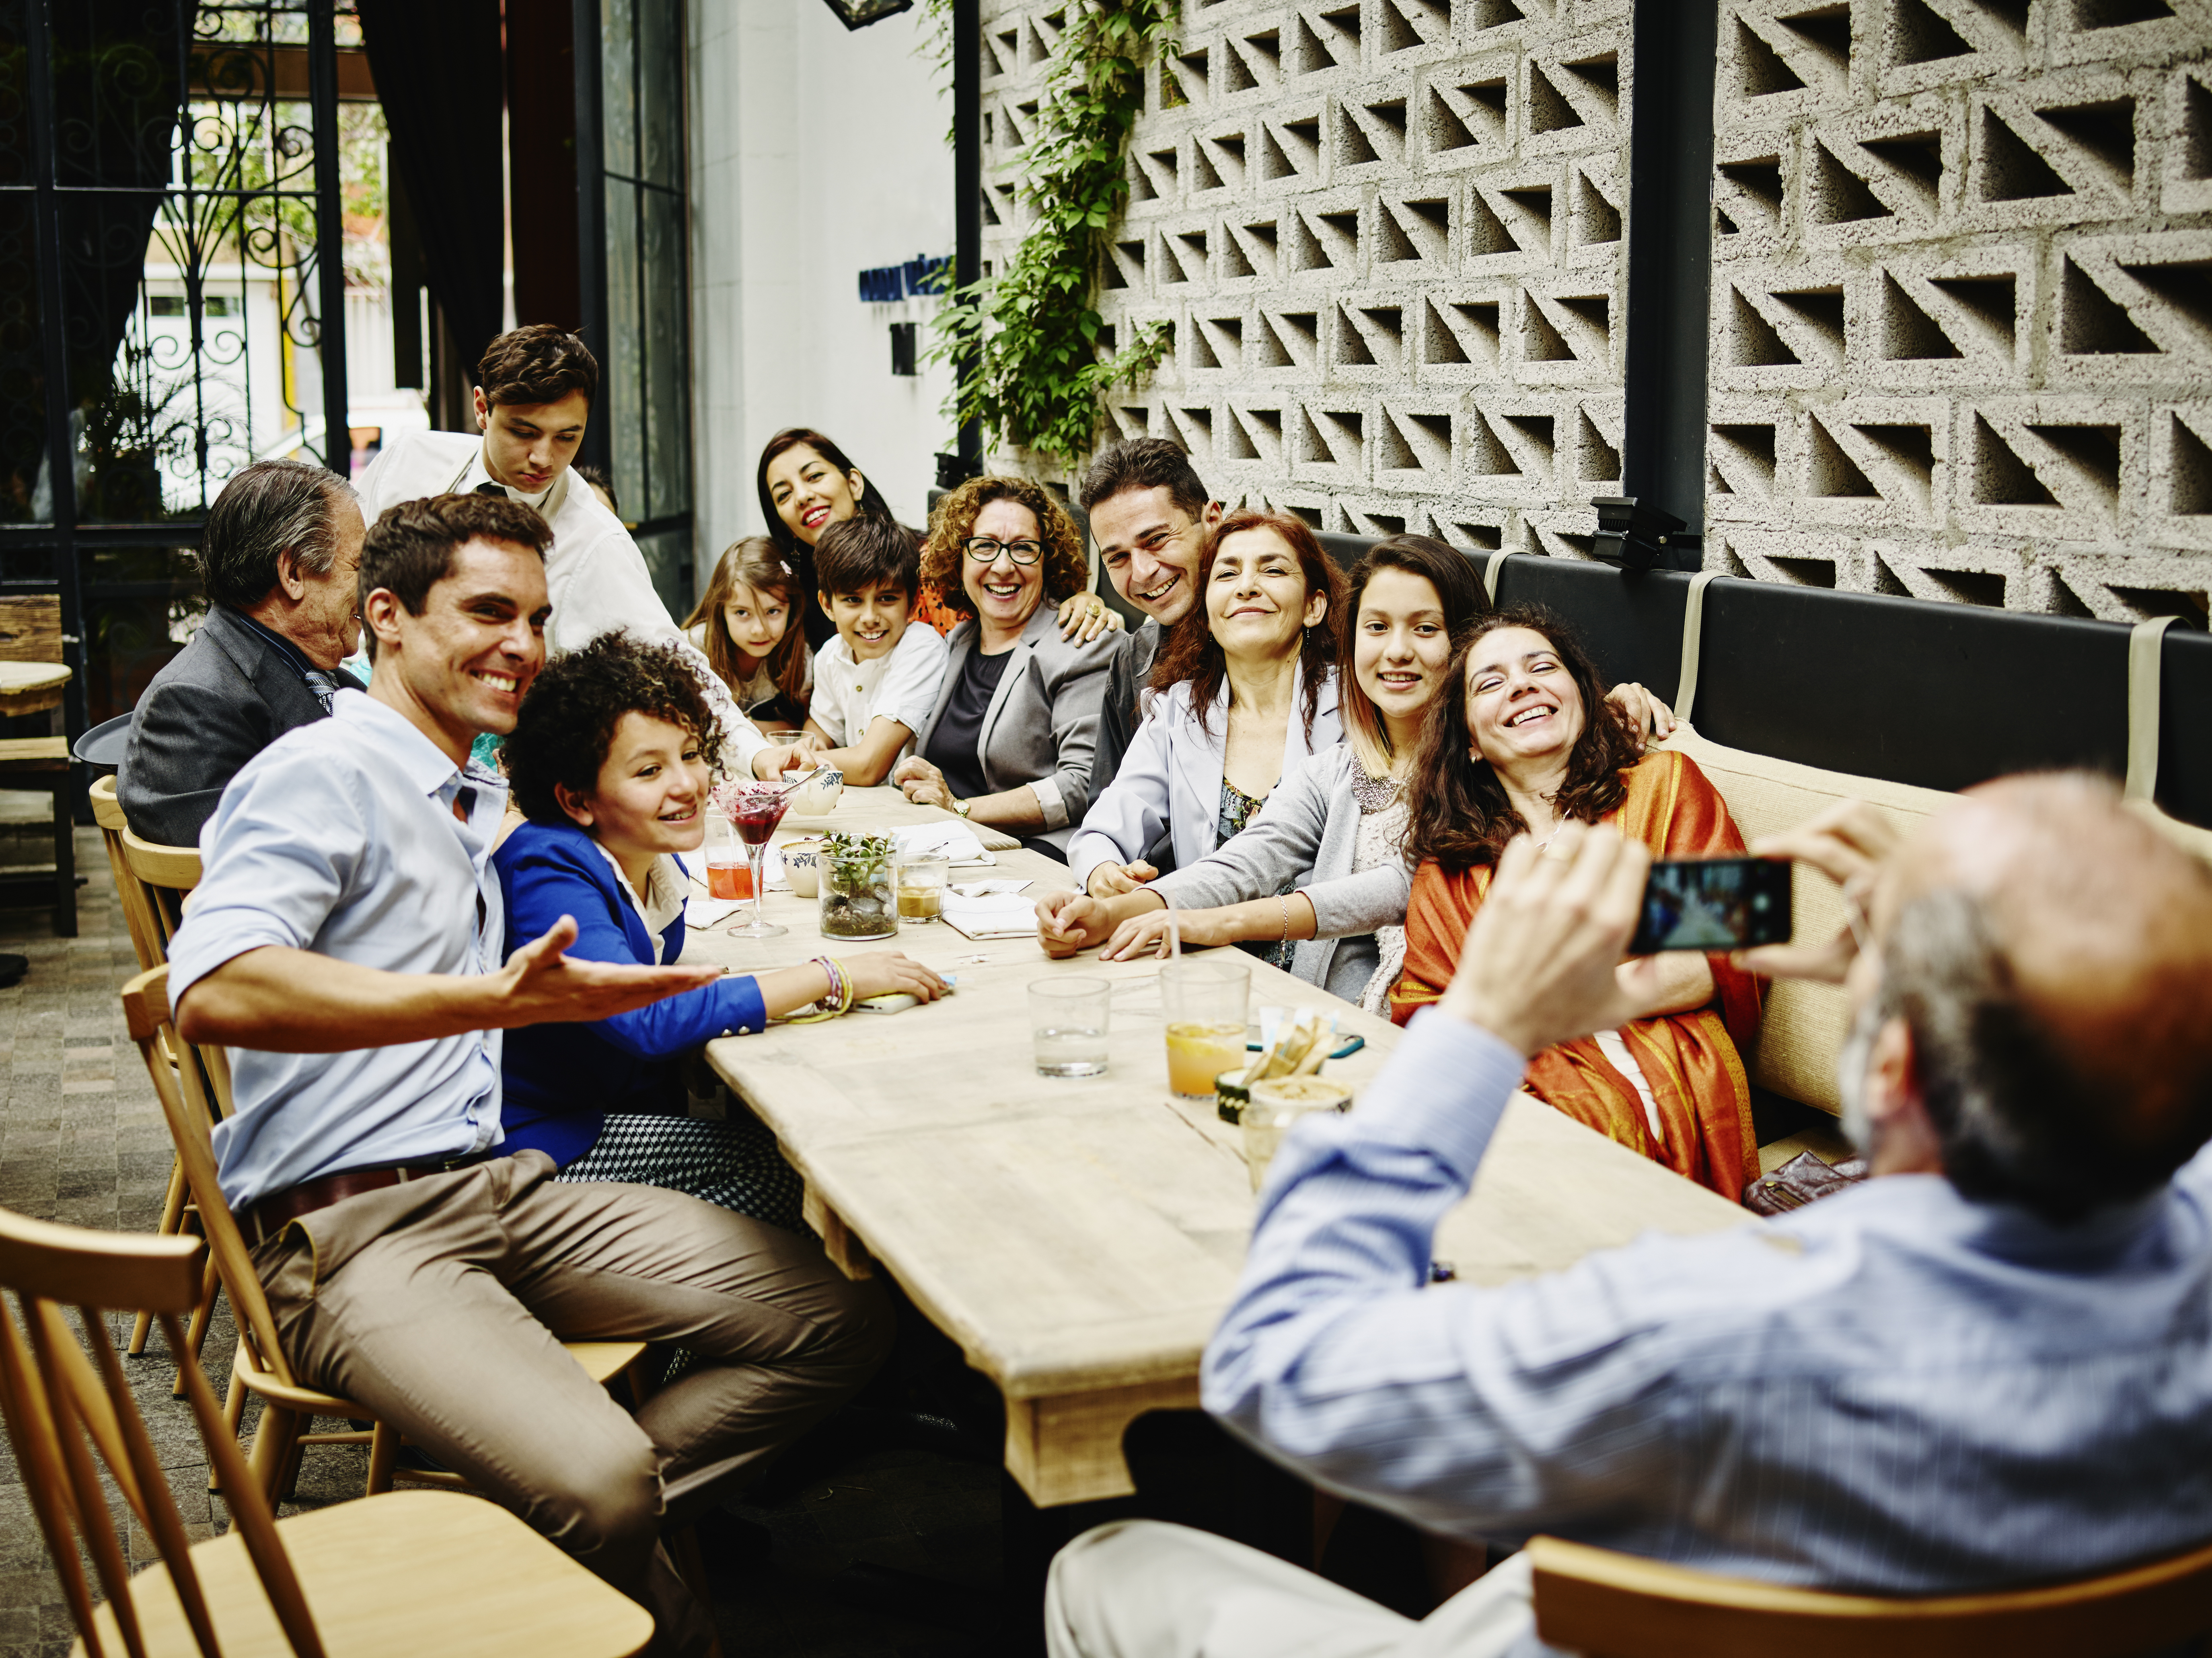 Ein Mann macht ein Familienfoto mit seinem Smartphone während einer Dinnerparty in einem Restaurant | Quelle: Getty Images